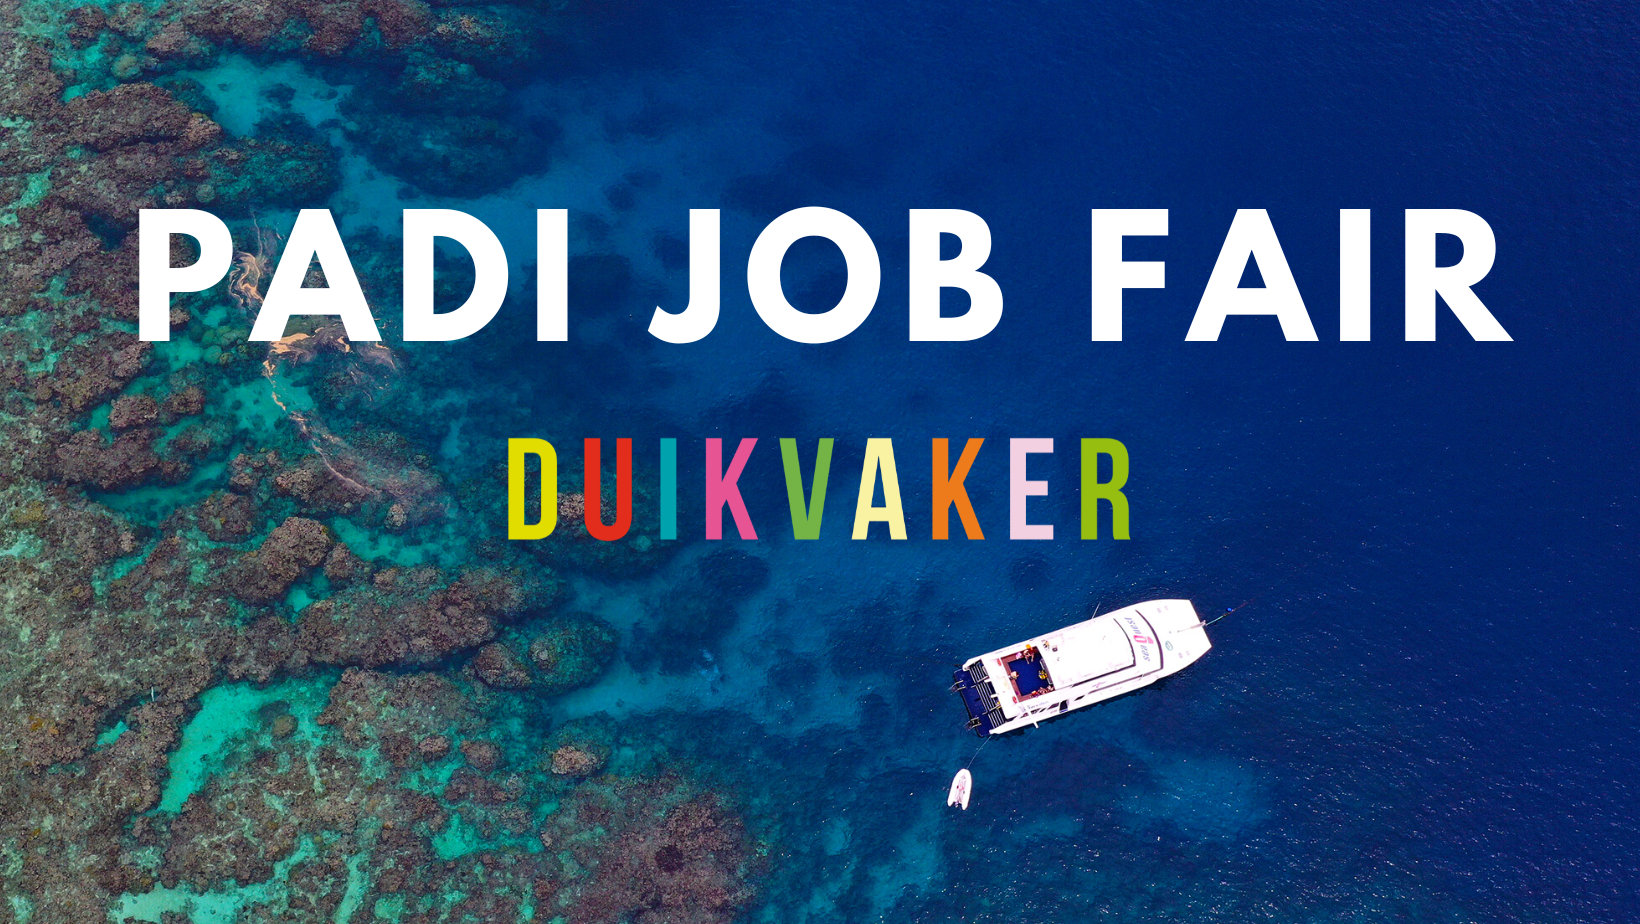 banner for Duikvaker job fair